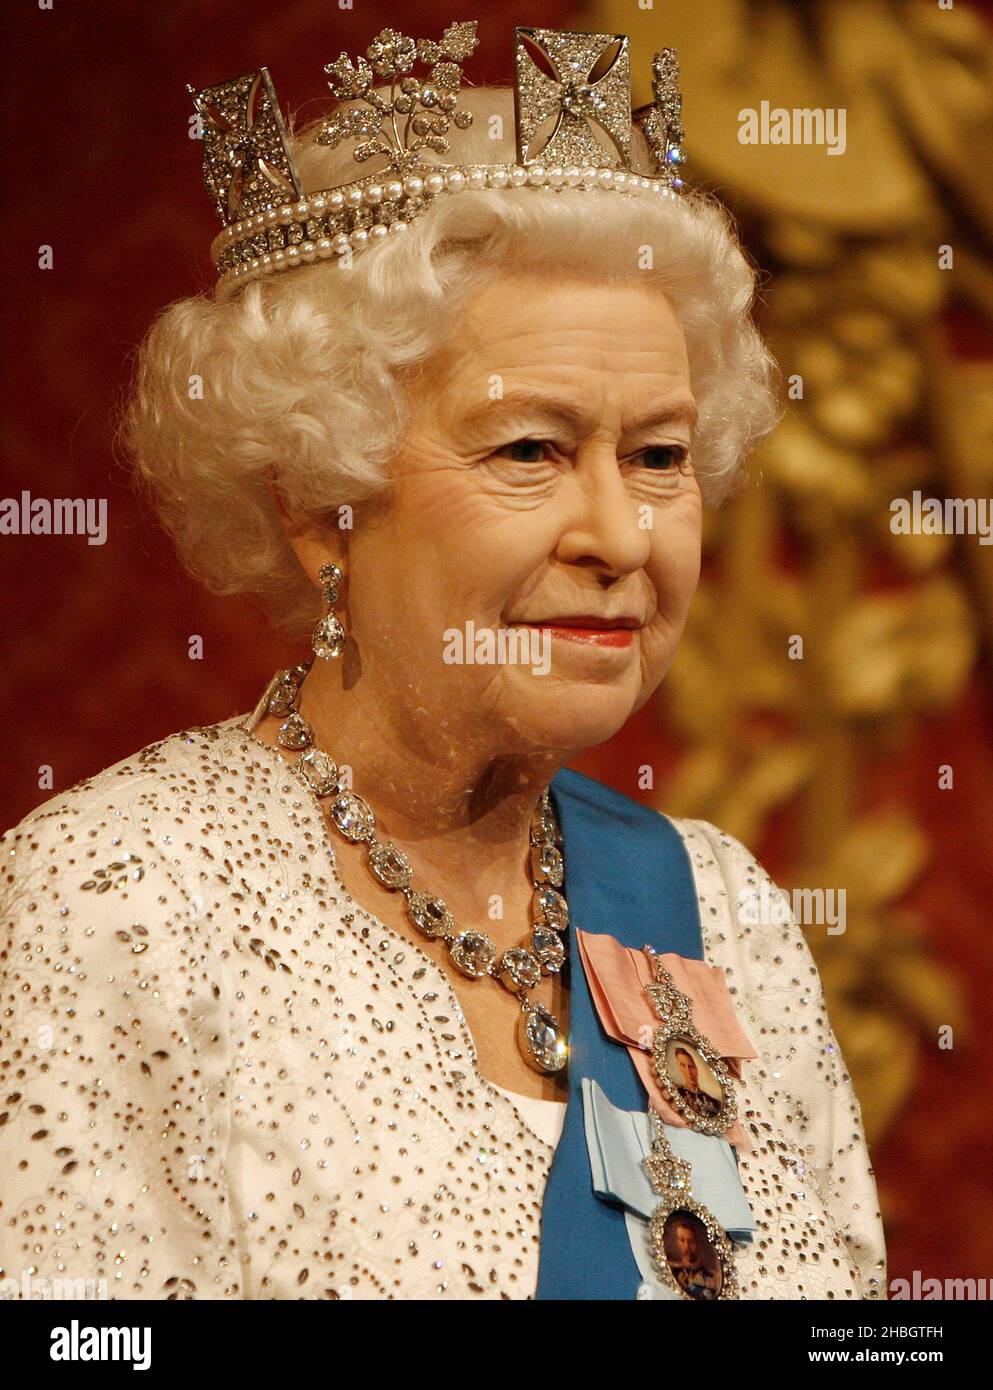 Die neue Wachsfigur von Elizabeth II., ihrer Majestät der Königin, wurde bei Madame Tussauds enthüllt. Zu Ehren ihres Diamond Jubilee, London Stockfoto